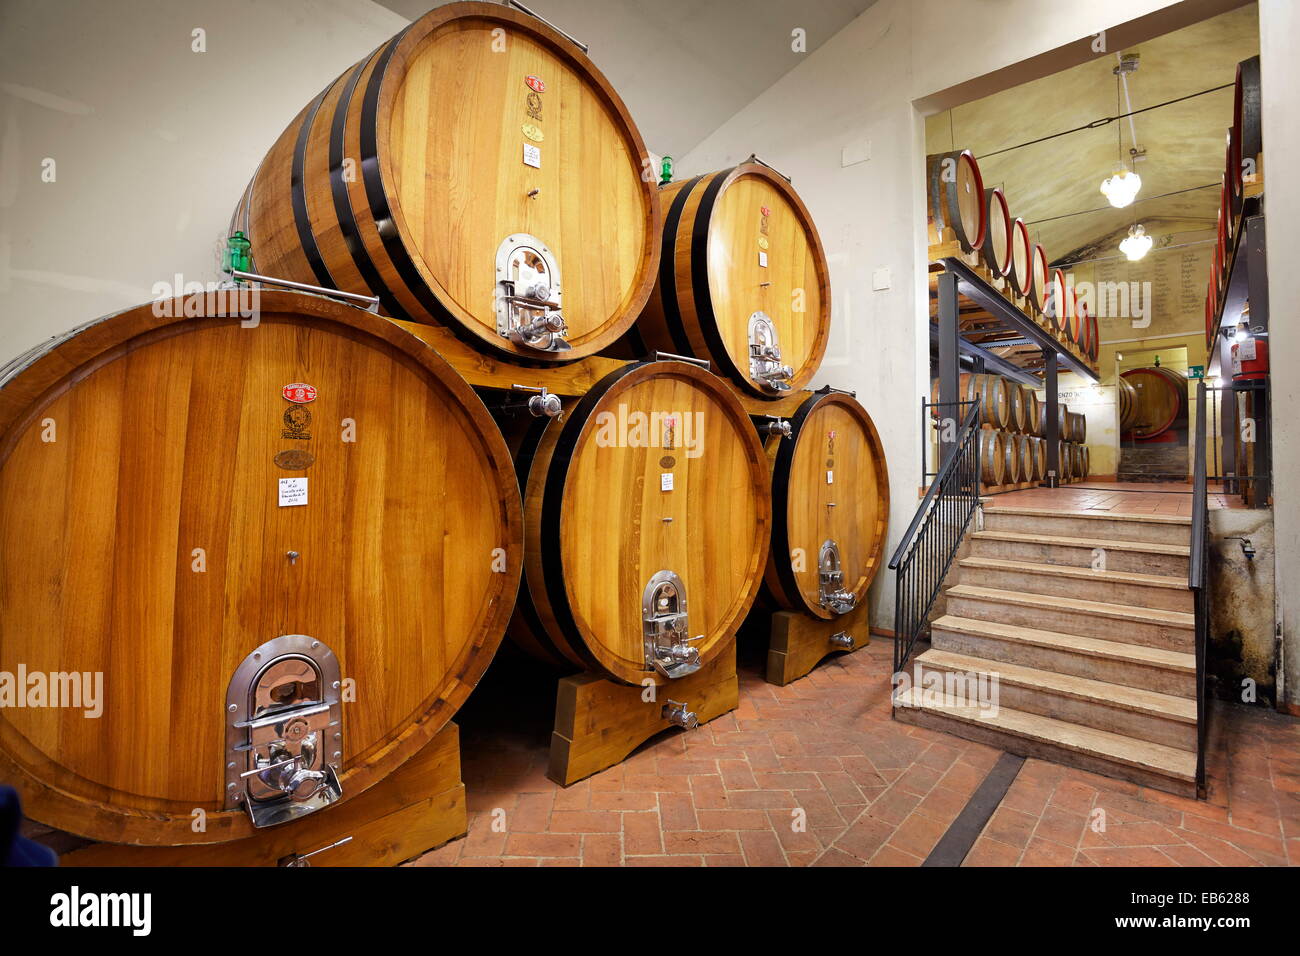 Wine barrels, Tuscany, Italy Stock Photo